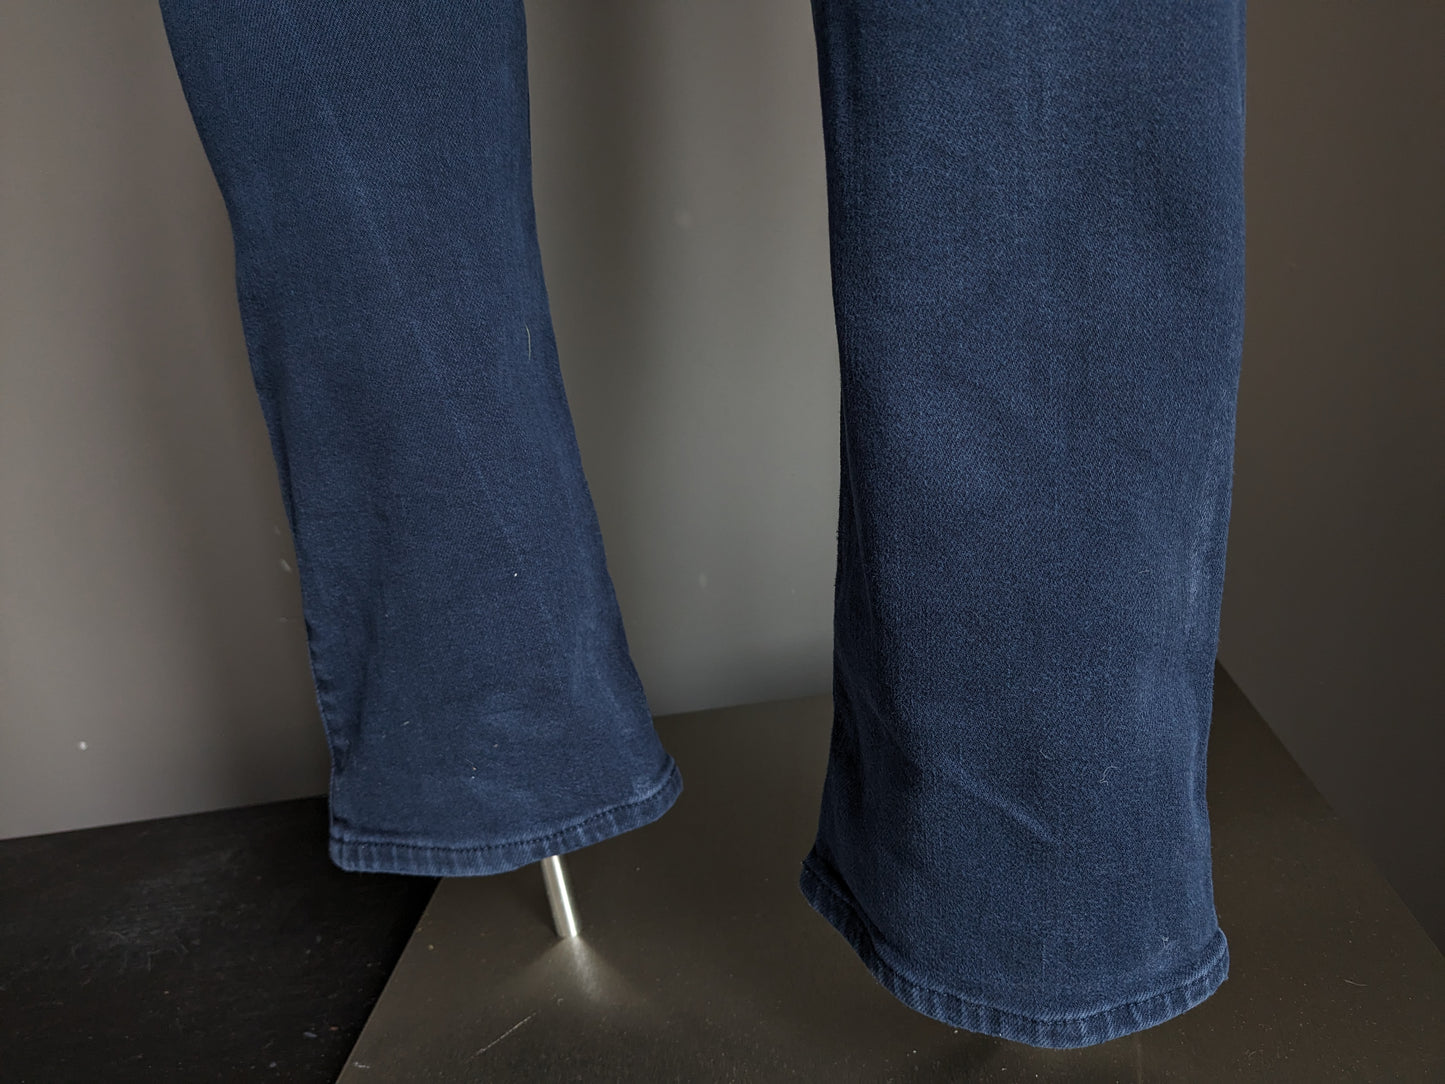 7 Per tutti i jeans umani. Colorato blu scuro. Taglia W33 - L34. stirata.